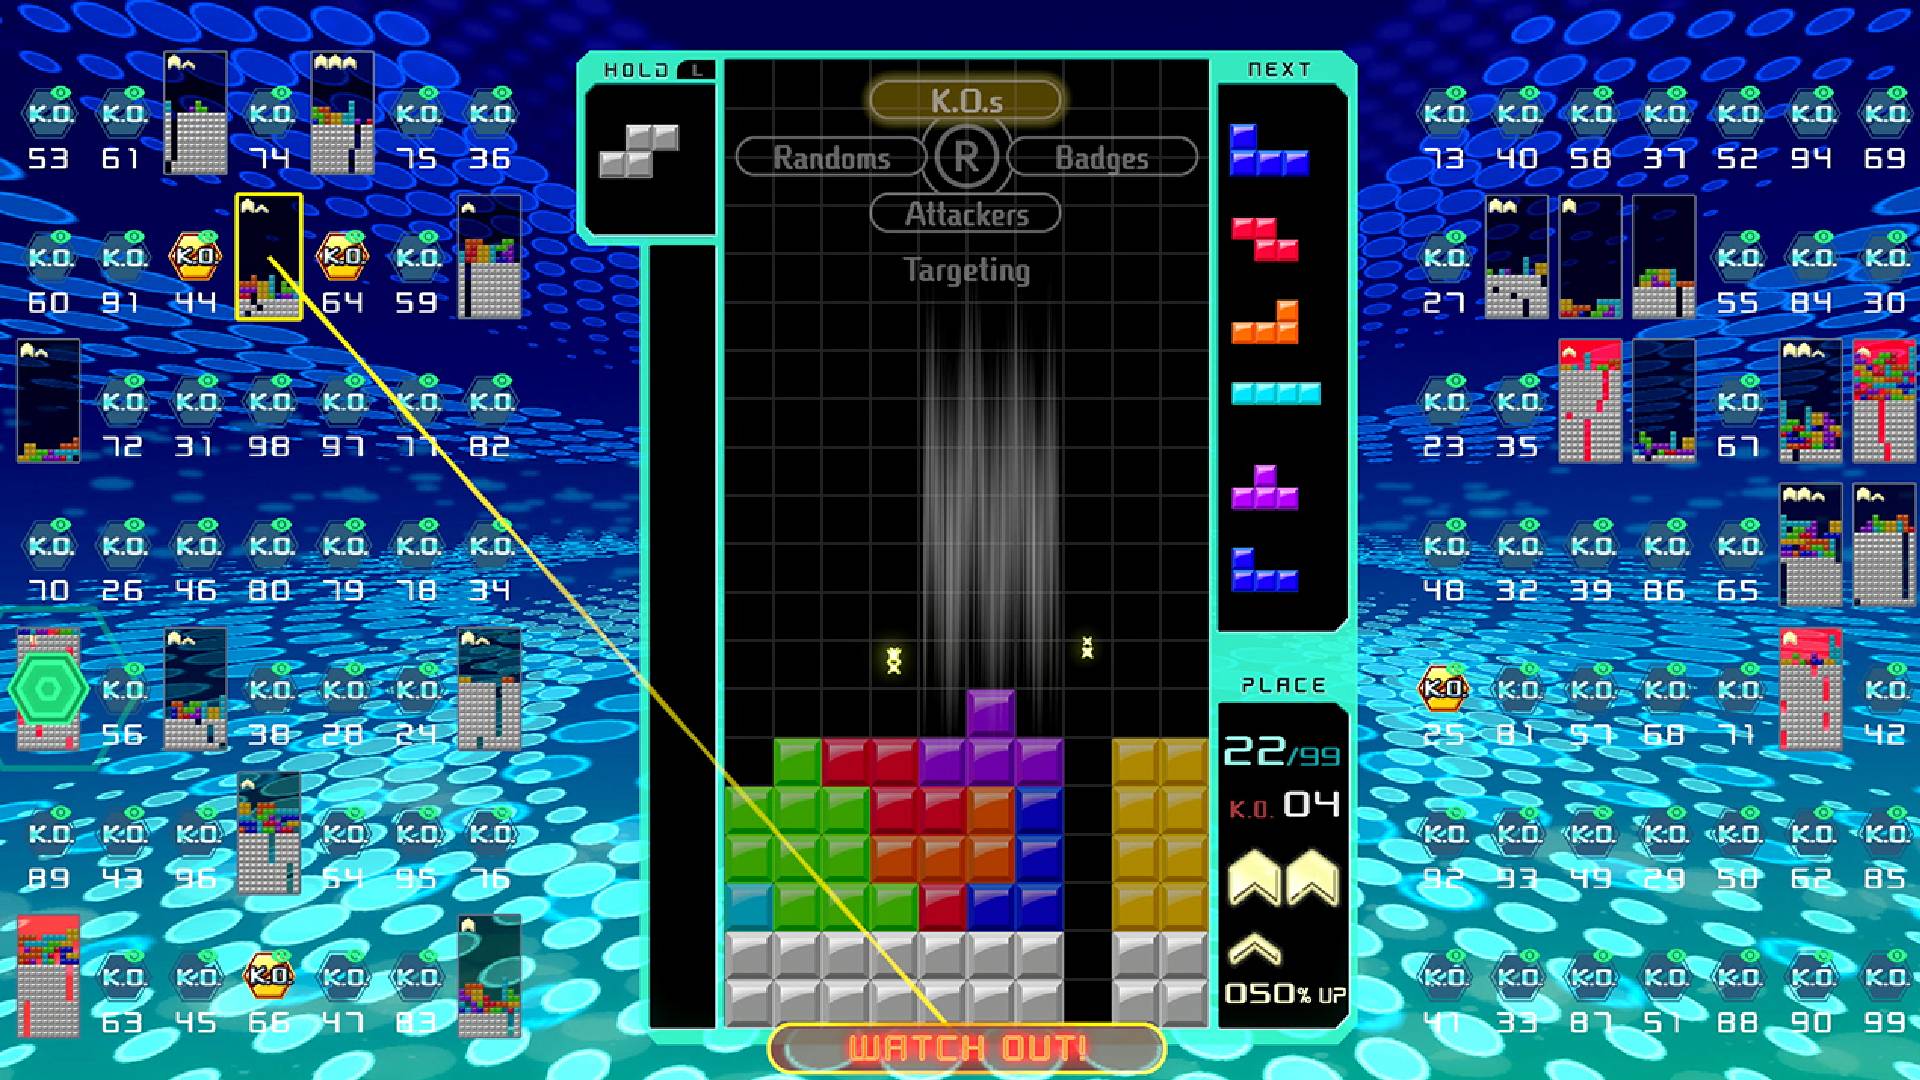 Un Jeu De Tetris Est Joué Tandis Que 98 Autres Jeux De Tetris Sont Affichés Autour De L'écran Principal